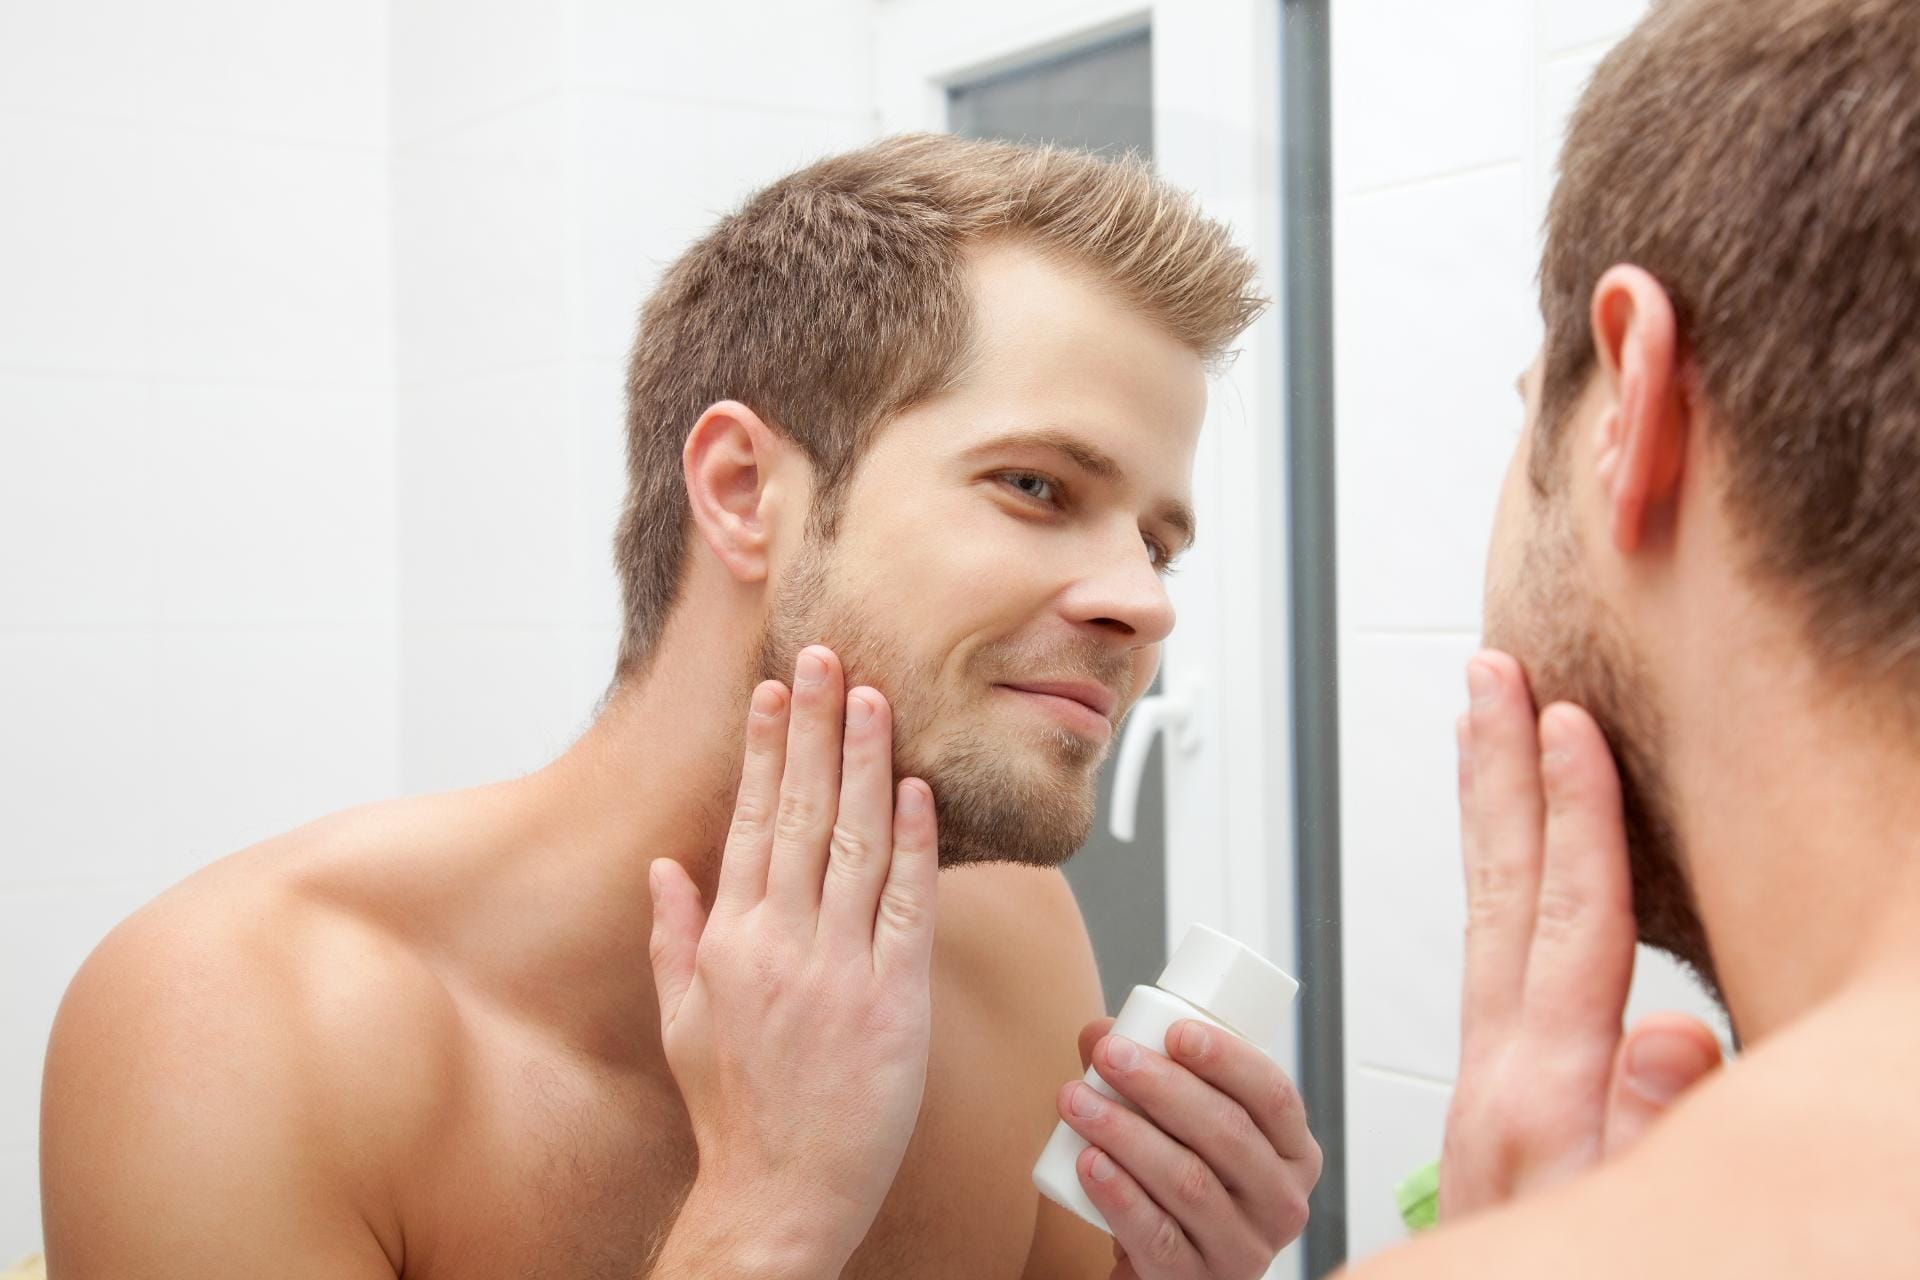 Damit die Bartstoppel nicht kratzen, sollte man ein Bartöl verwenden.